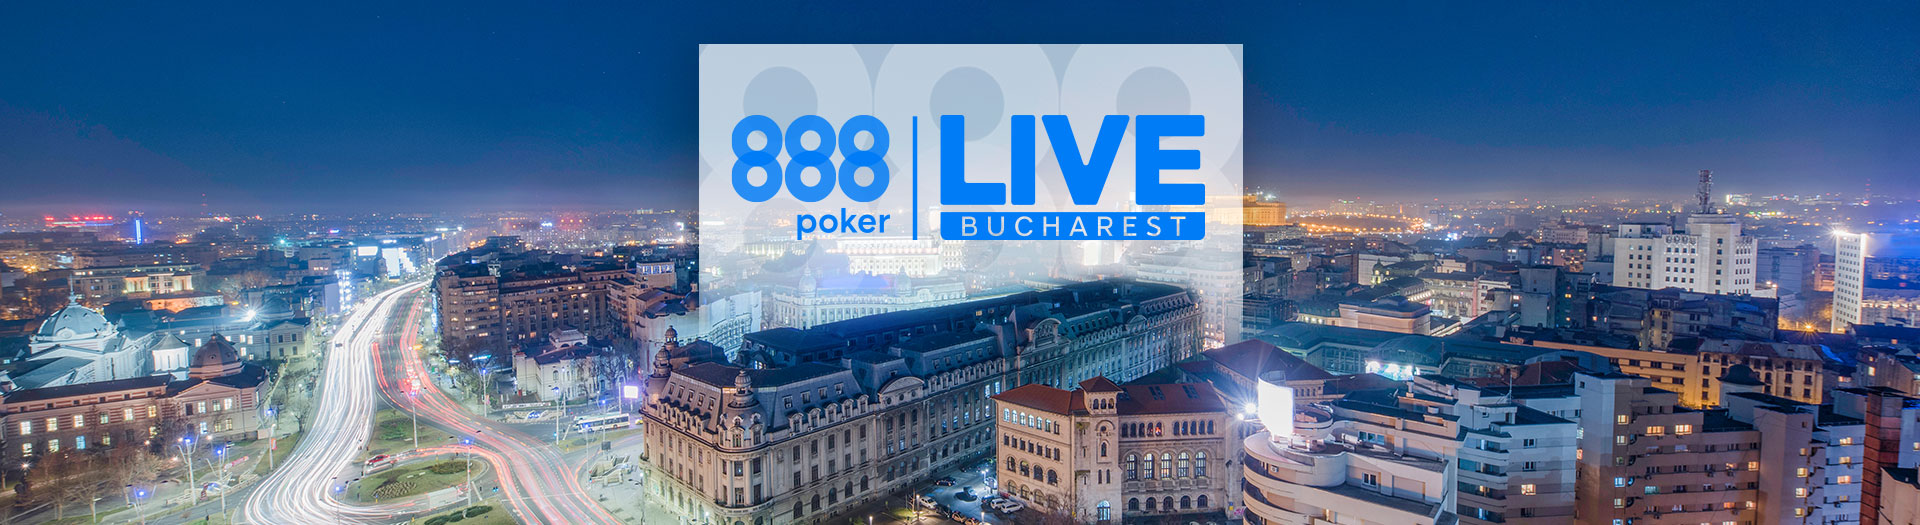 Live-Bucharest-LP-image